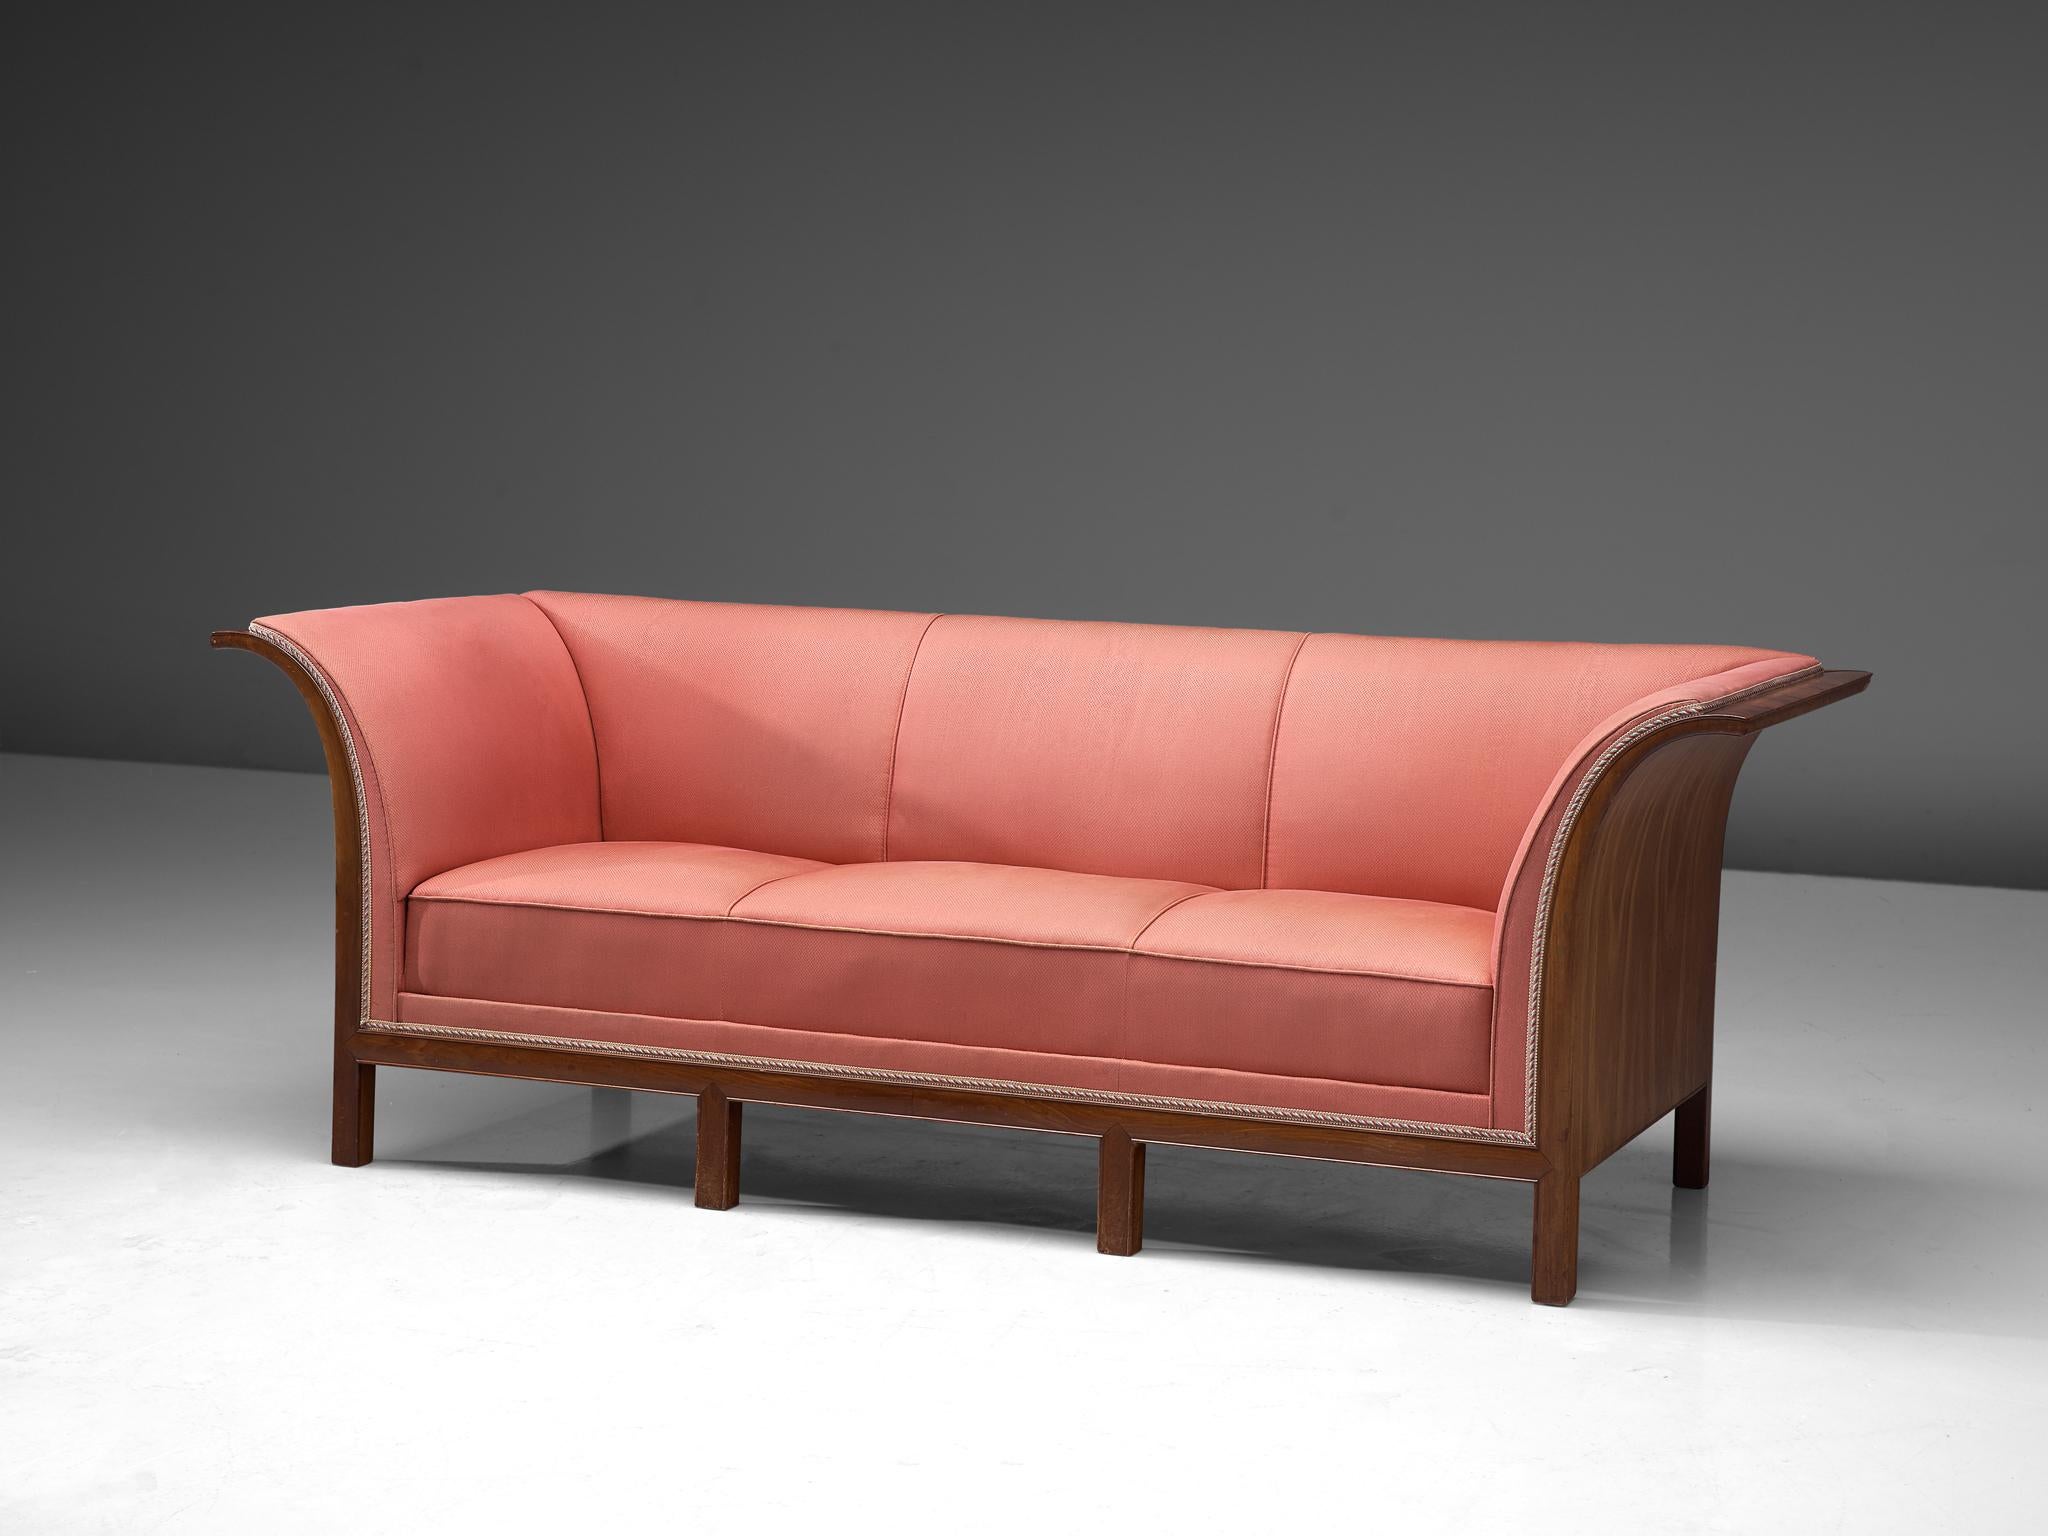 Frits Henningsen, canapé, acajou, tissu rose, Danemark, années 1930

Ce canapé classique a été conçu et produit par le maître ébéniste Frits Henningsen vers les années 1930. Le design de base est bien équilibré et présente un contraste intéressant